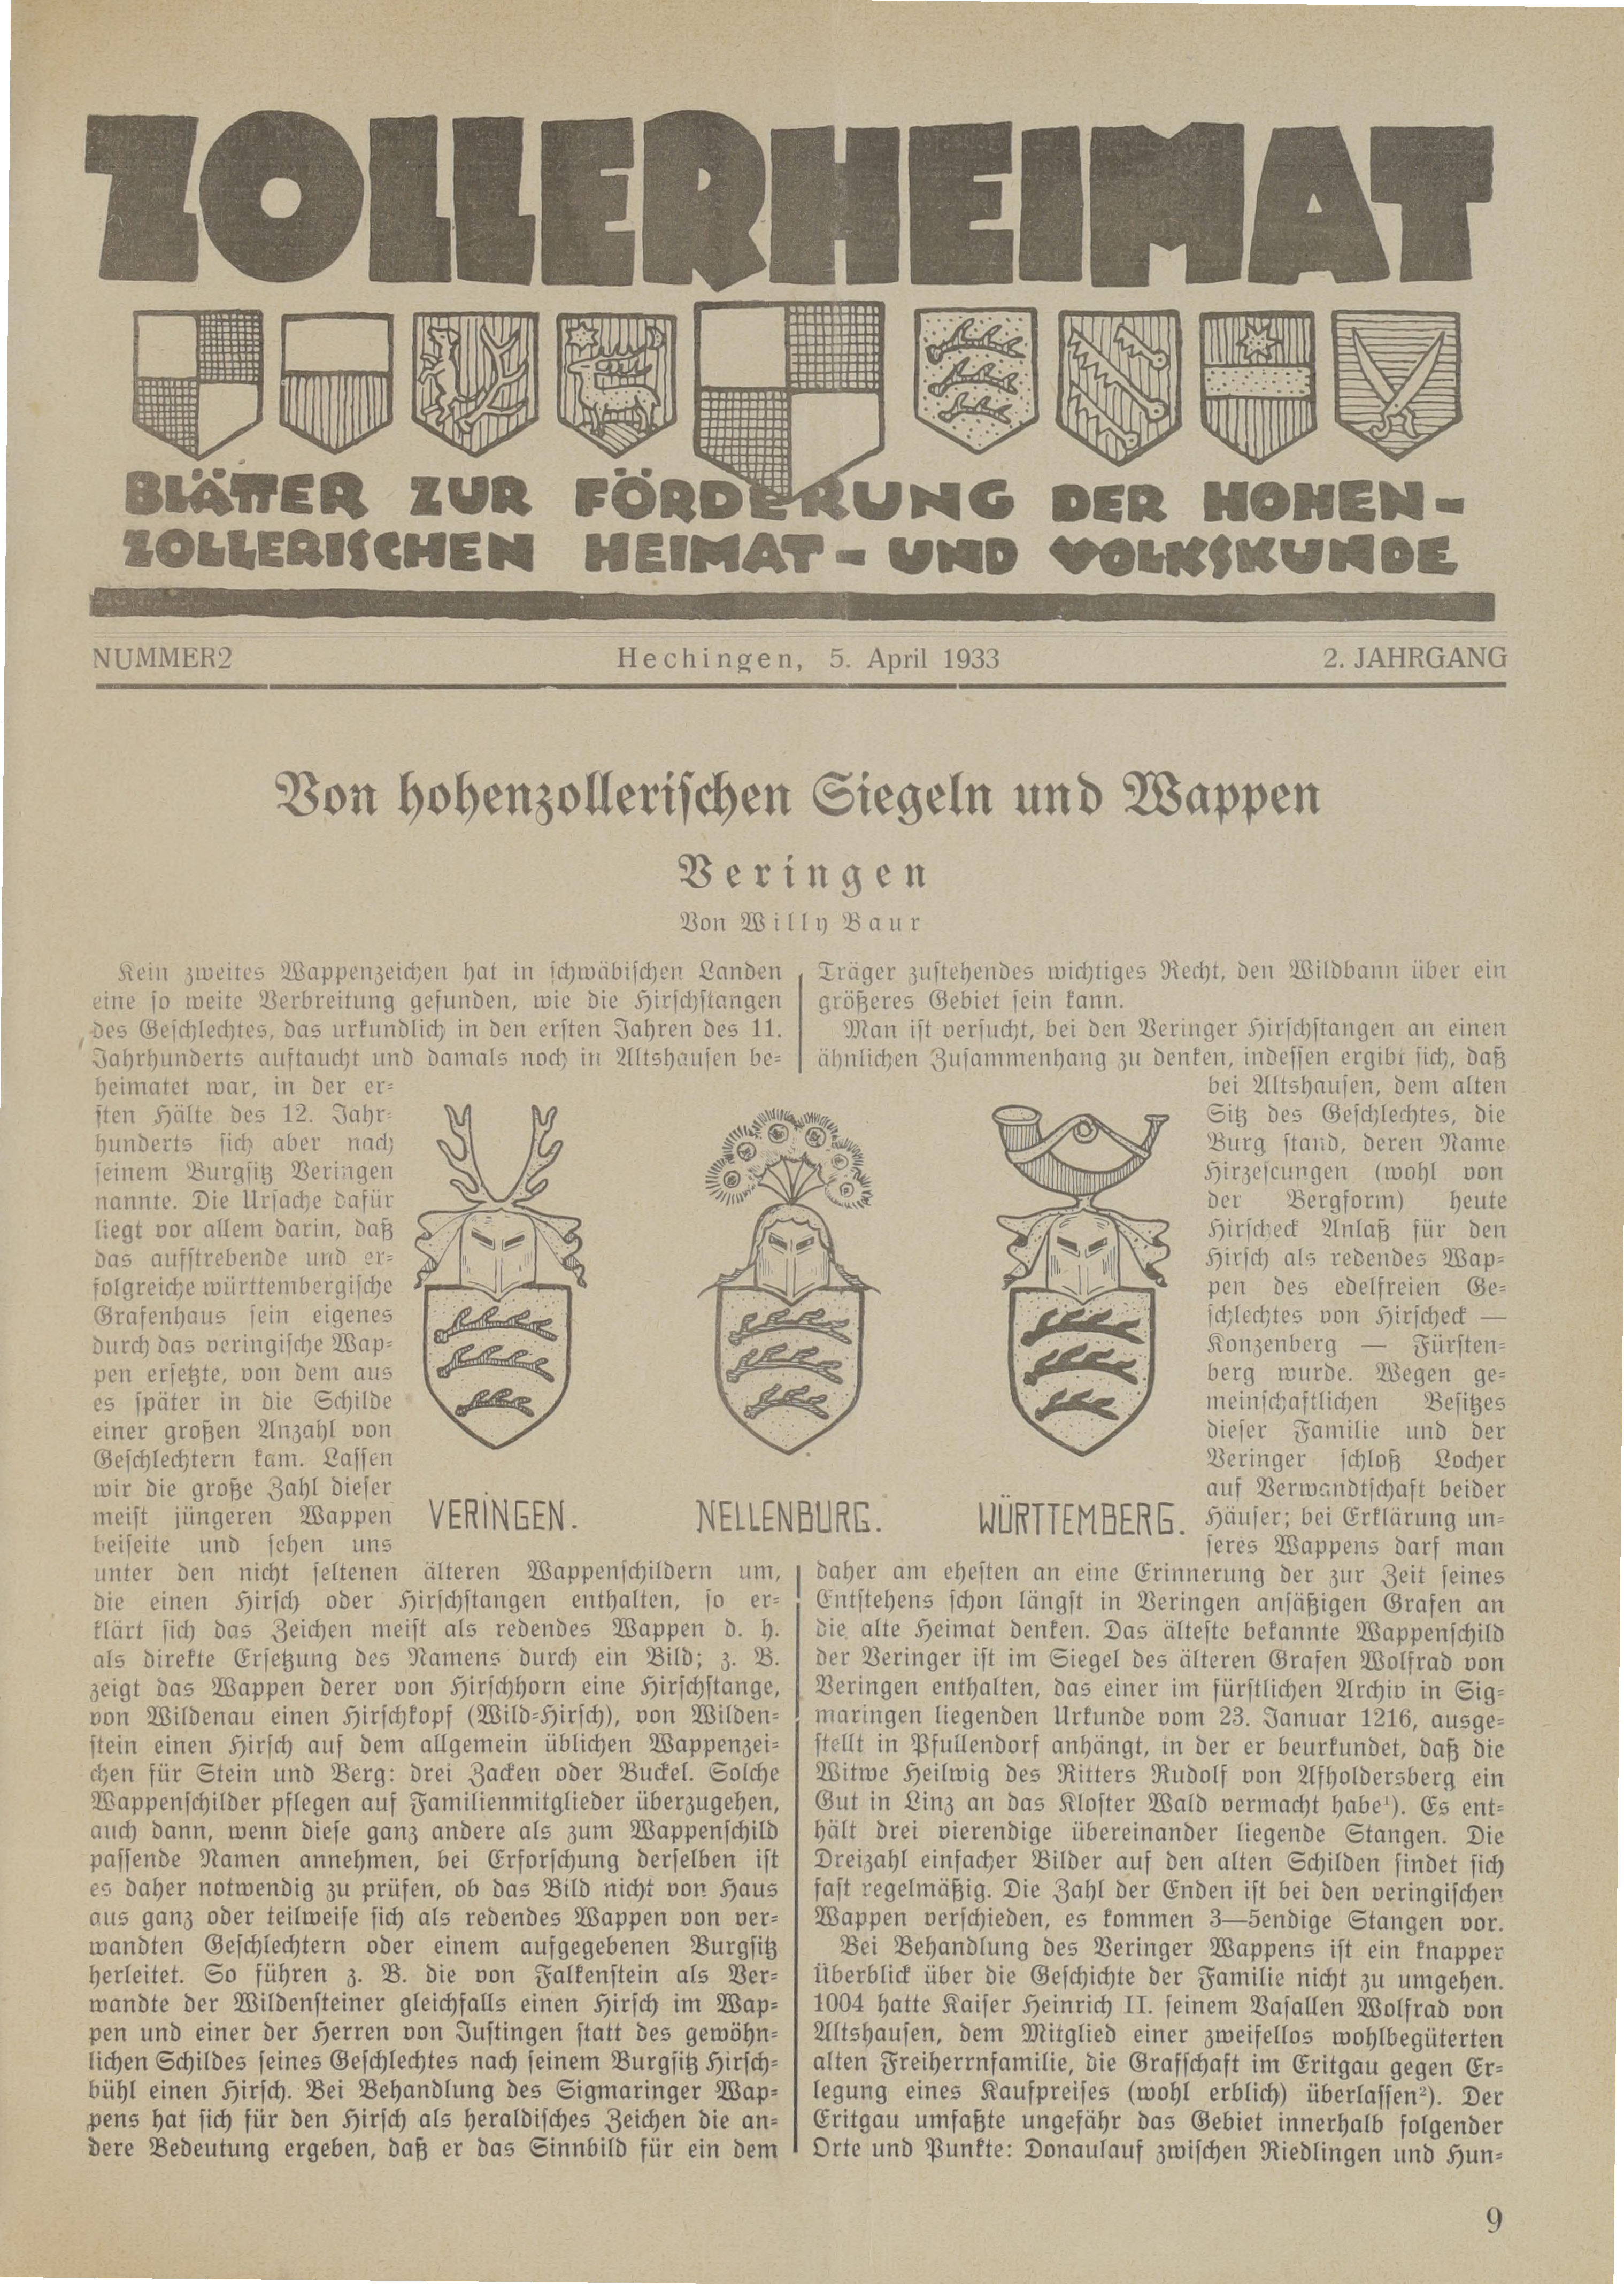                     Ansehen Bd. 2 Nr. 2 (1933): Zollerheimat
                